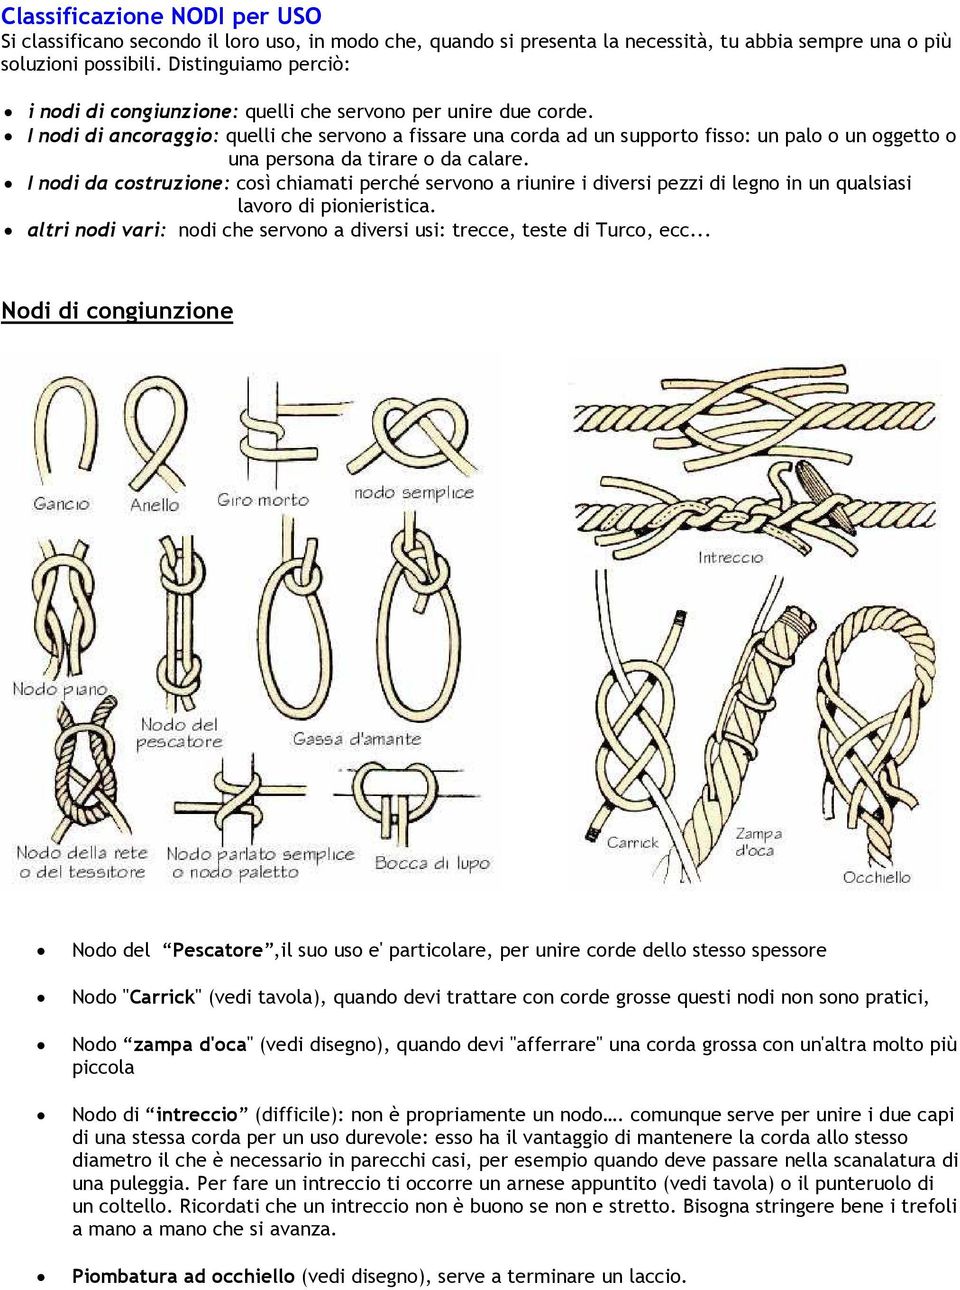 I nodi di ancoraggio: quelli che servono a fissare una corda ad un supporto fisso: un palo o un oggetto o una persona da tirare o da calare.